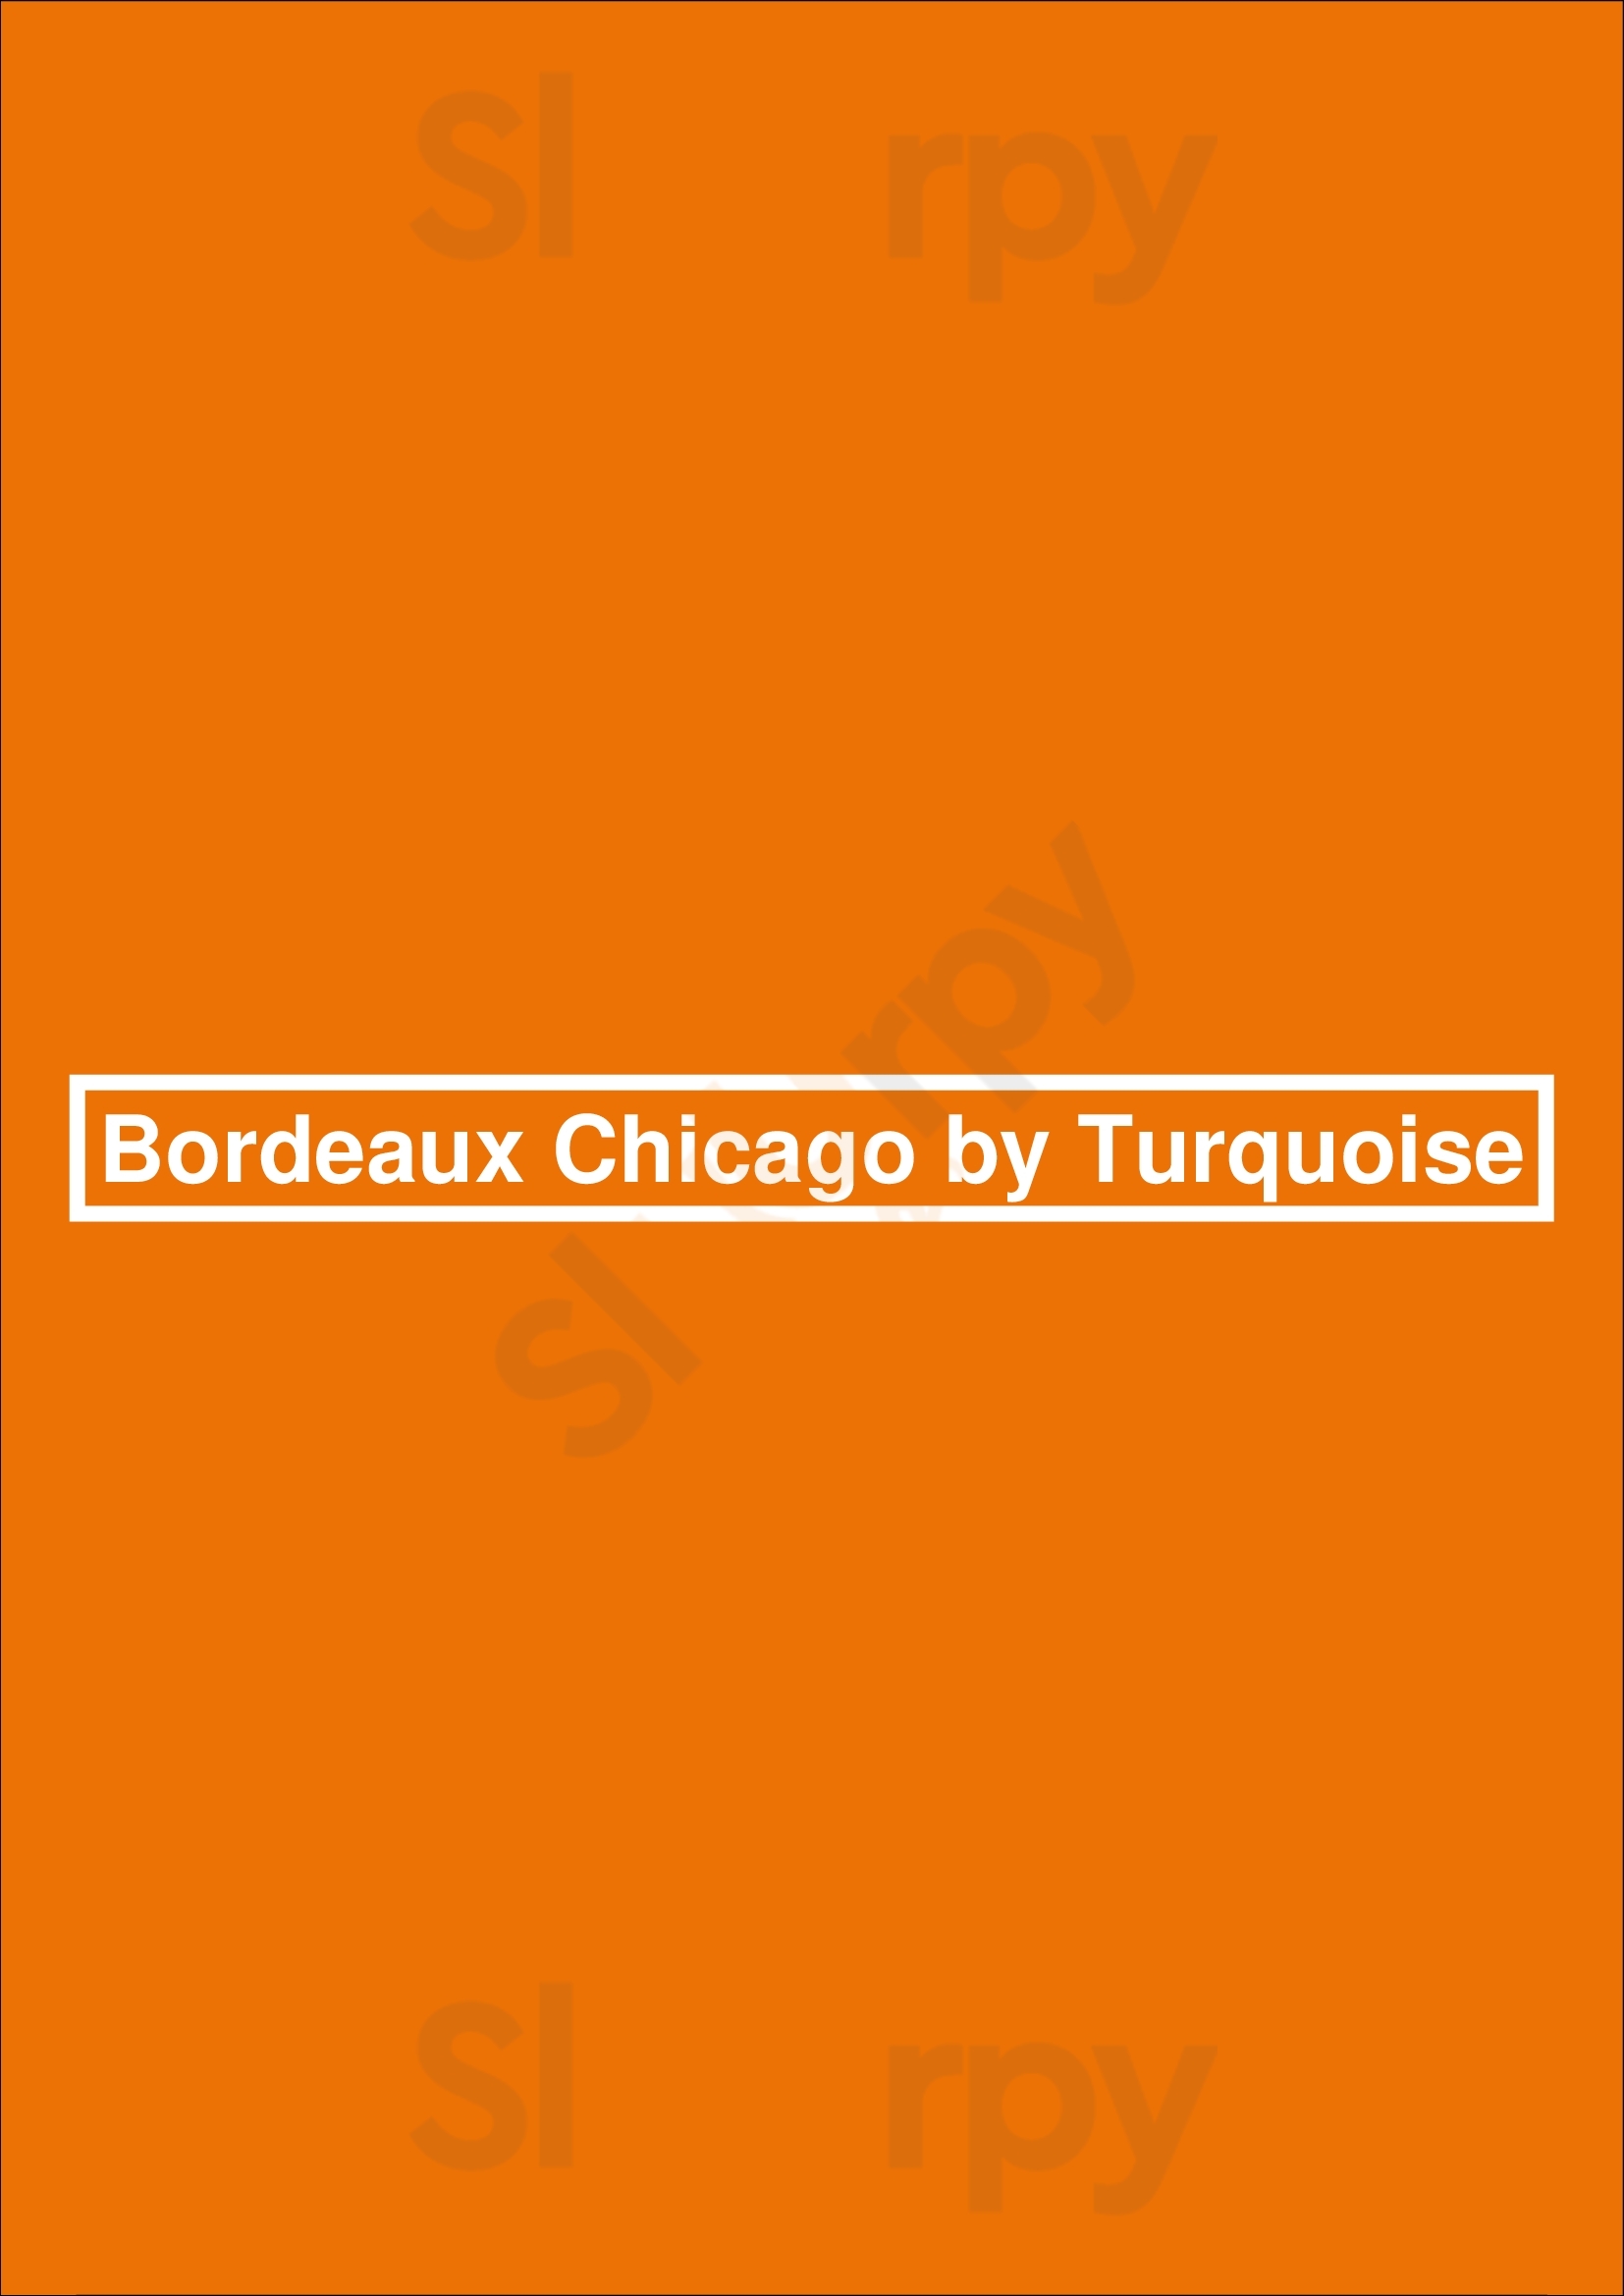 Bordeaux Chicago Chicago Menu - 1